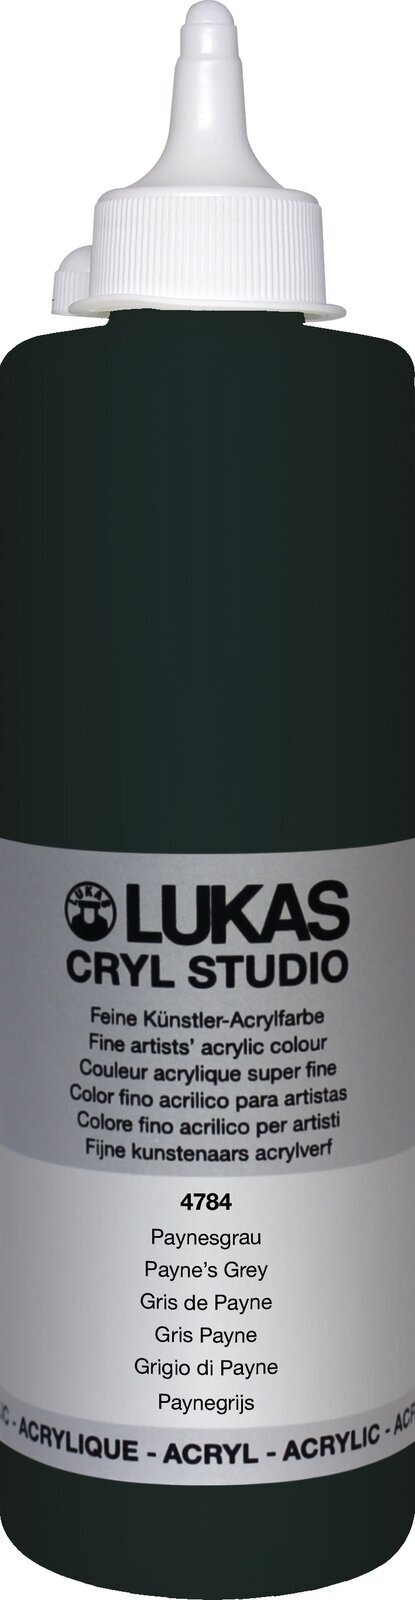 Peinture acrylique Lukas Cryl Studio Acrylic Paint Plastic Bottle Peinture acrylique Payne's Grey 500 ml 1 pc